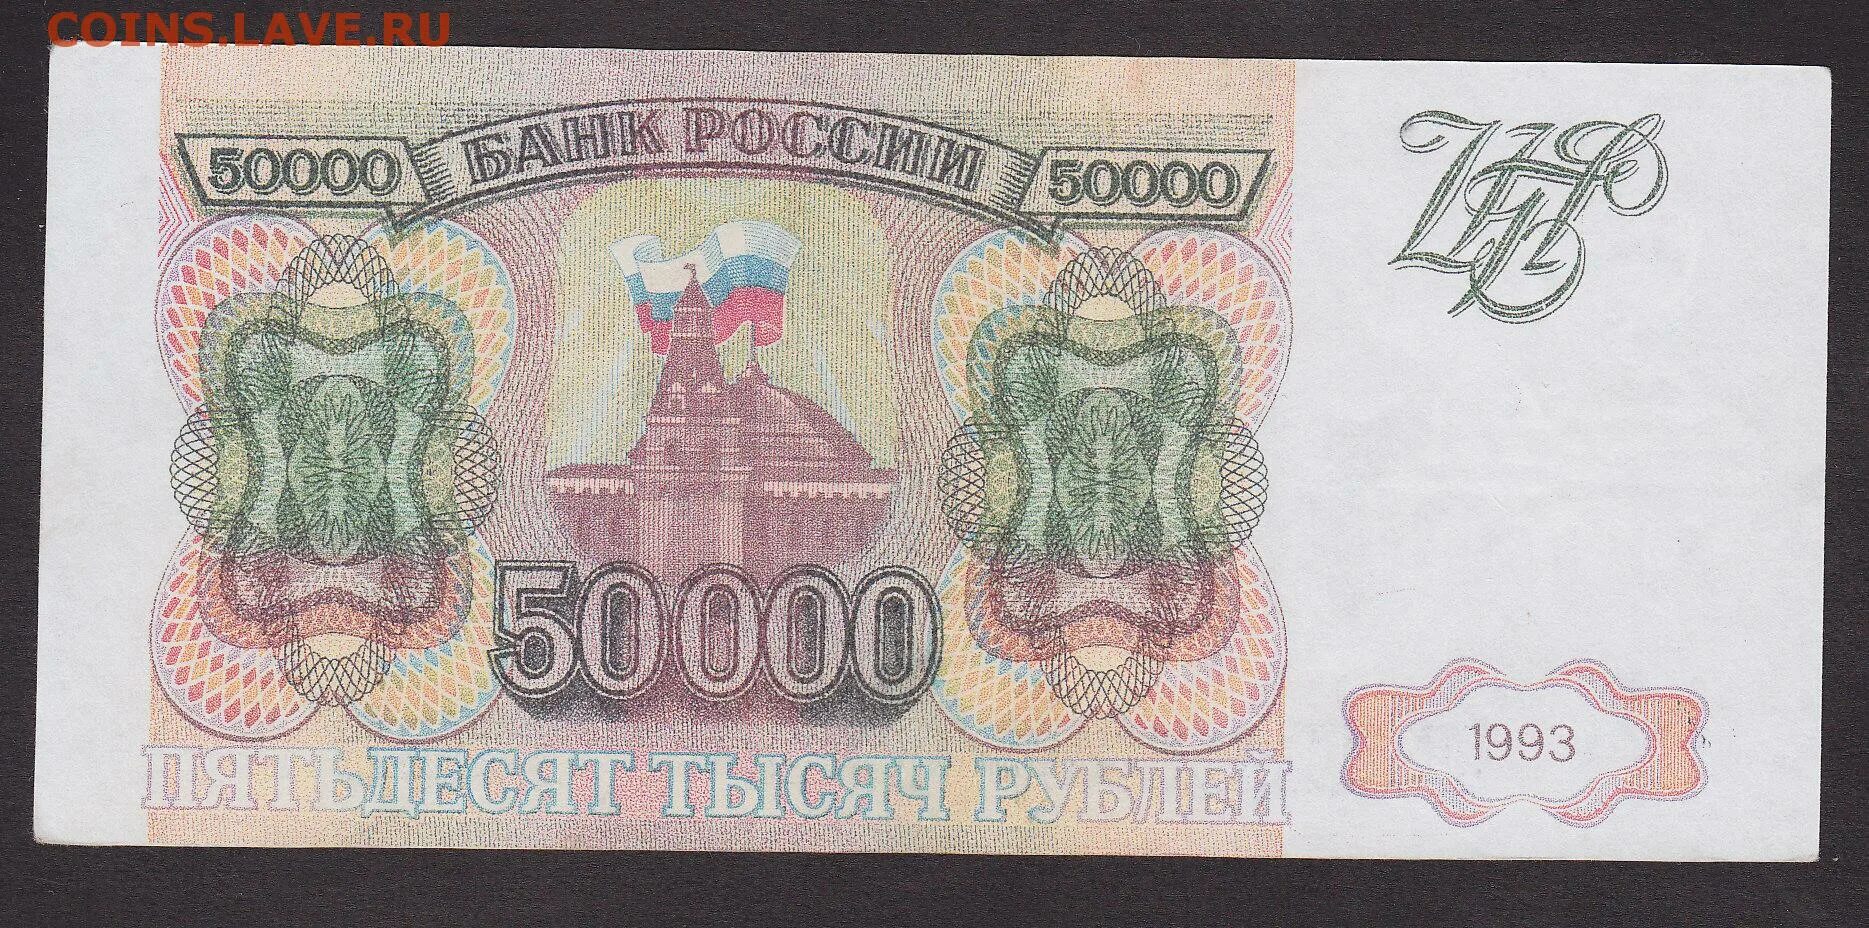 5000 недорого. Купюра 50000 рублей 1992 года. Купюра 50000 рублей 1993 года. Банкнота 50000 рублей 1993. 50 000 Рублей банкнота.